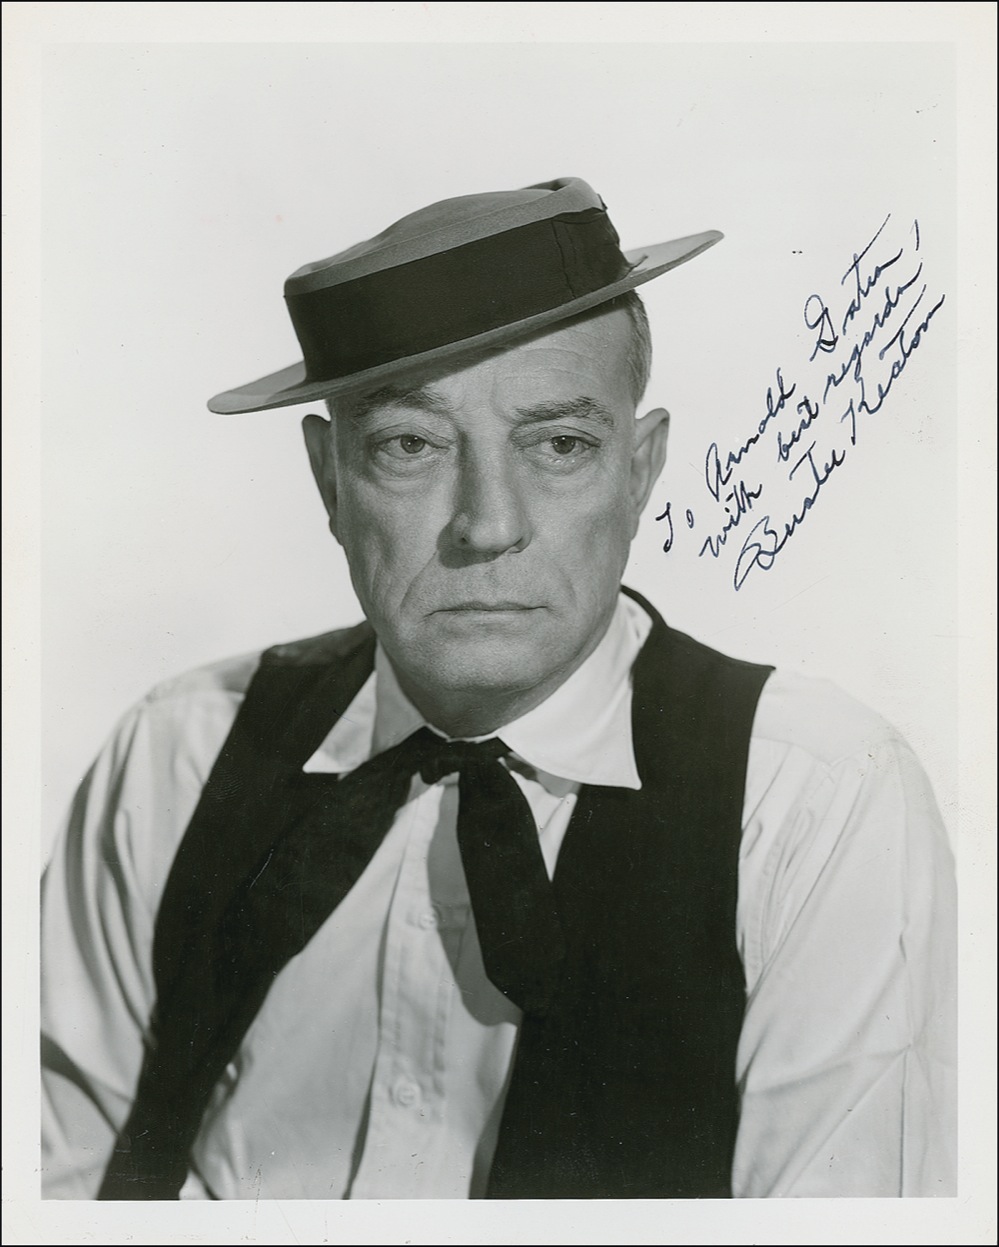 Lot #804 Buster Keaton